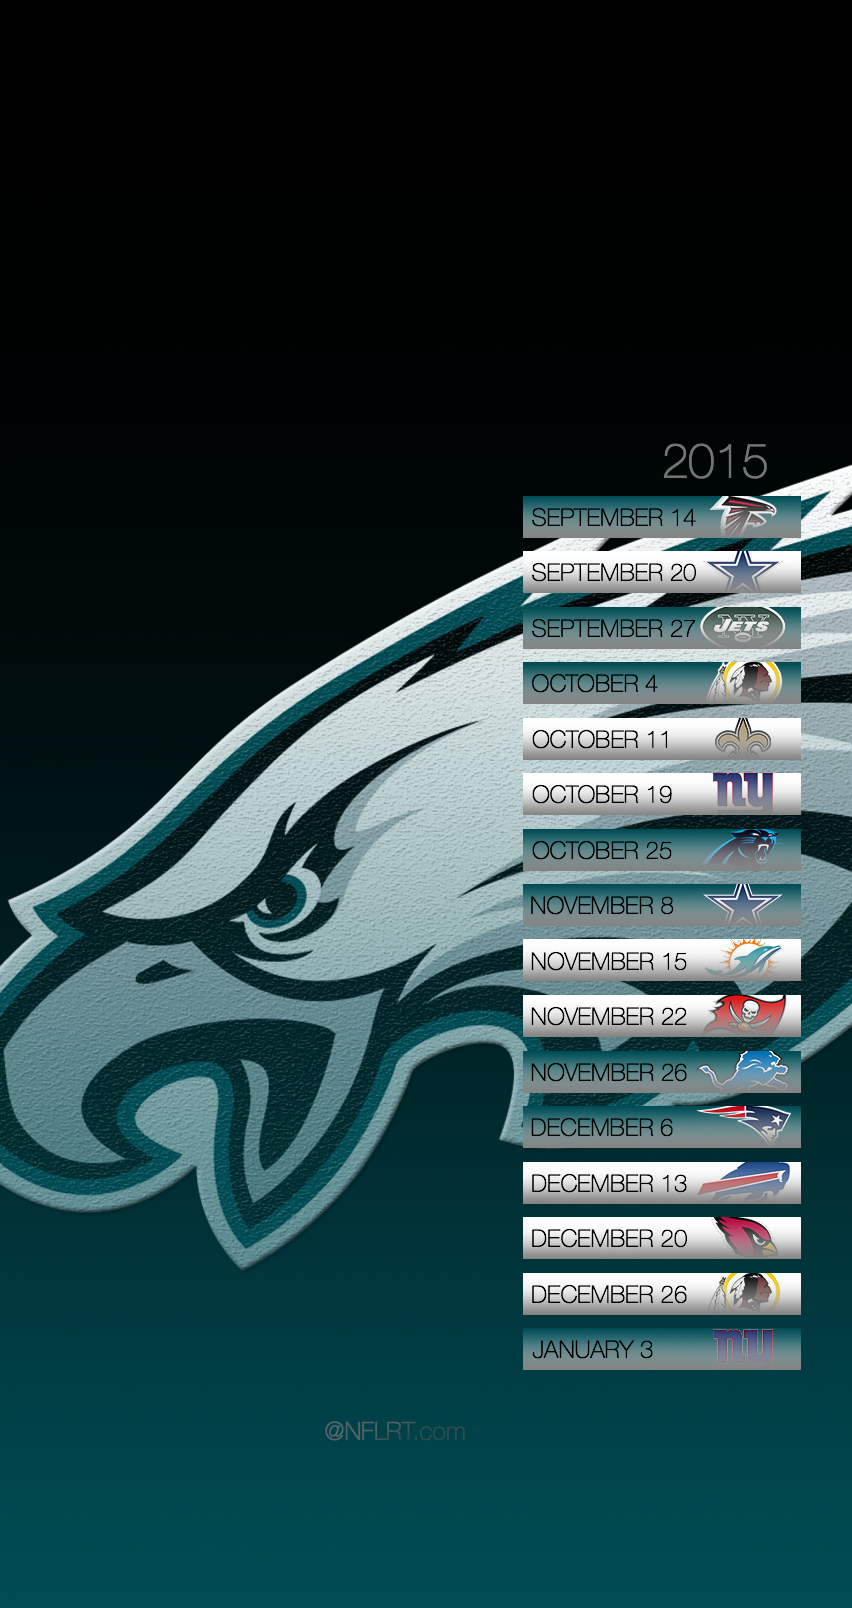 2015 NFL Schedule Wallpapers   of 8   NFLRT